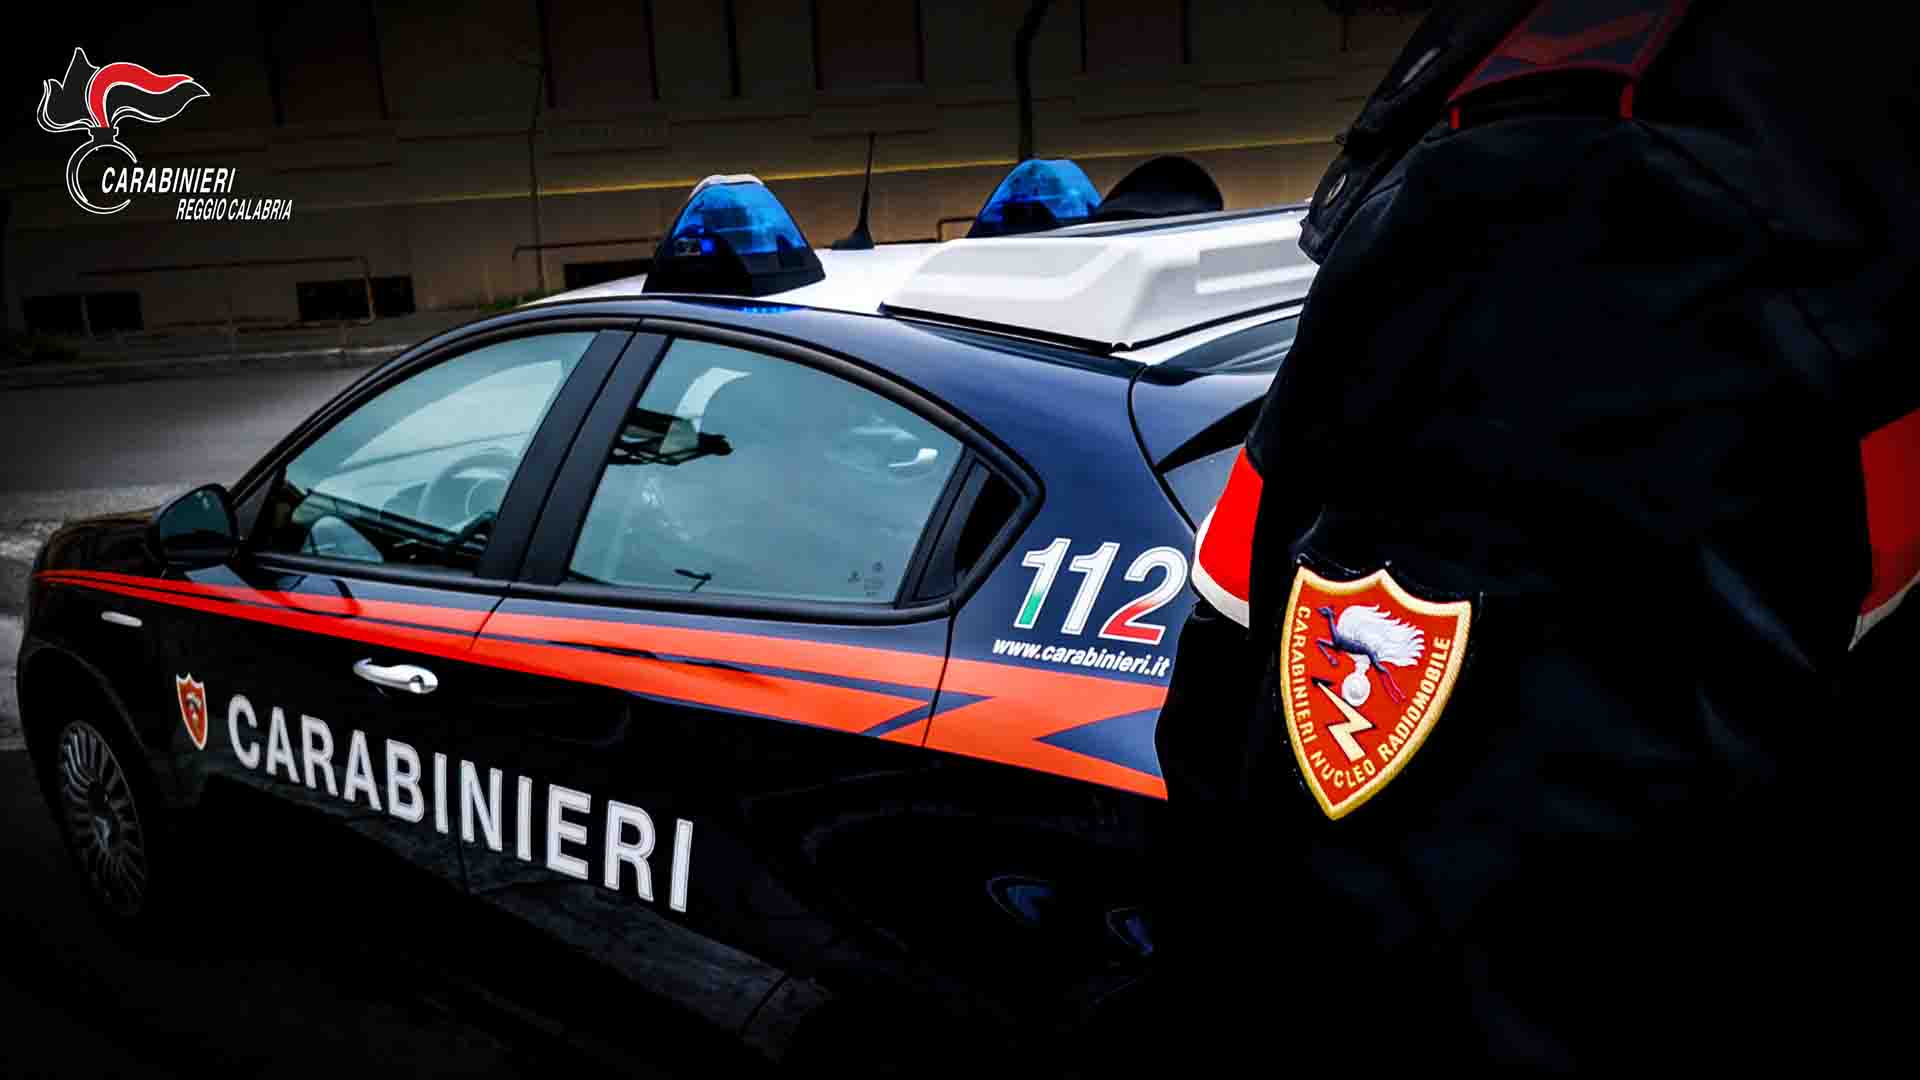 Carabinieri, Treviso